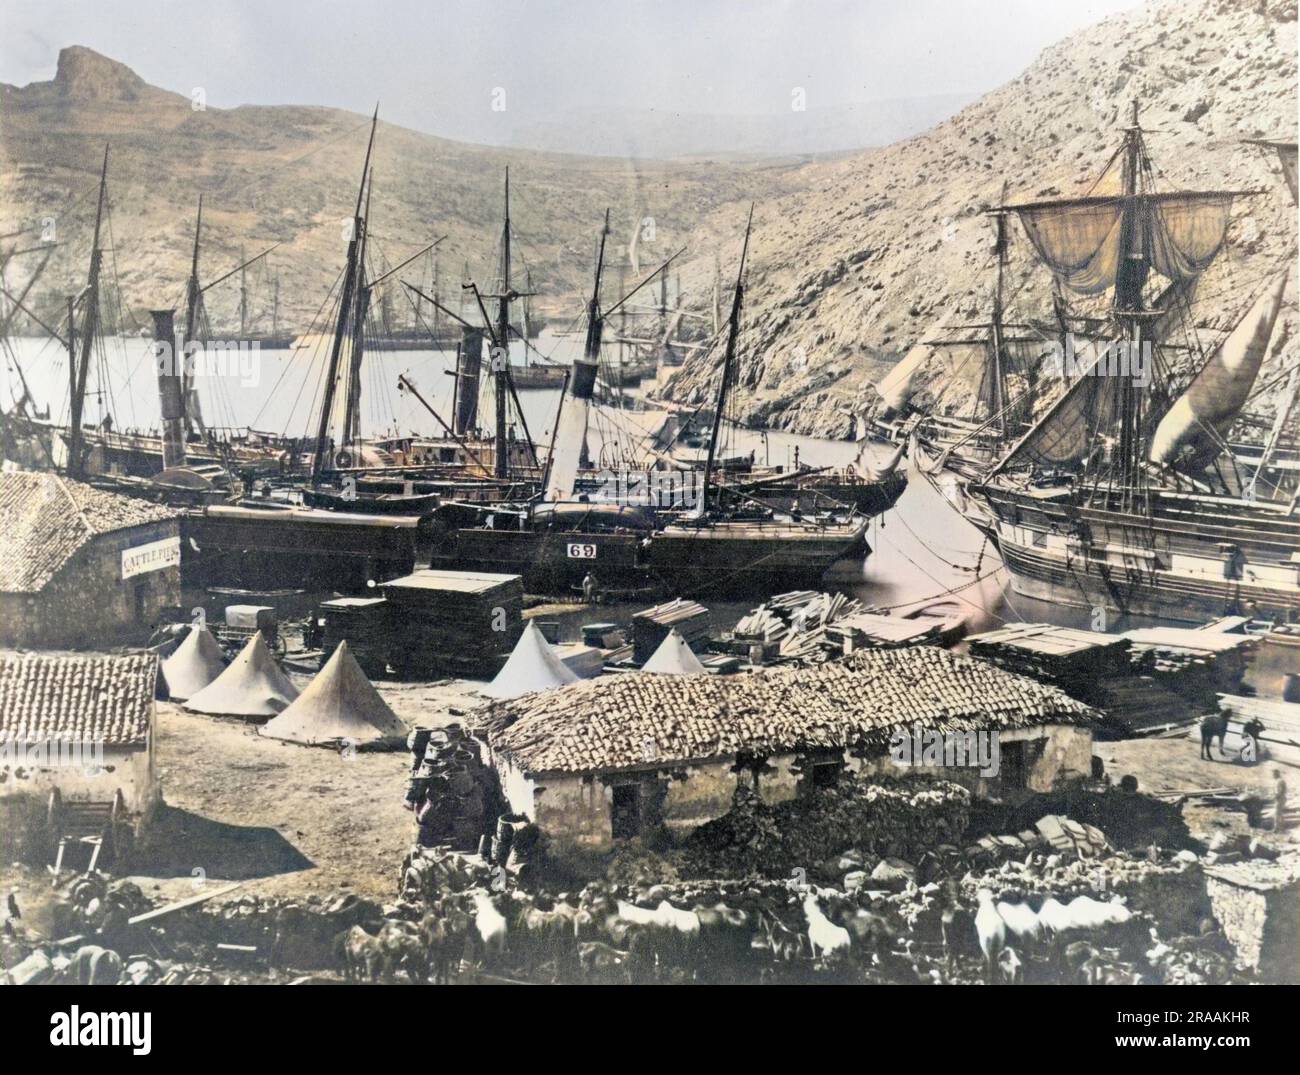 Cossack Bay, Balaklava, 1855. Photo de Roger Fenton (1819-1869) montrant du matériel et des fournitures pour les forces britanniques pendant la guerre de Crimée. Date: 1855 Banque D'Images